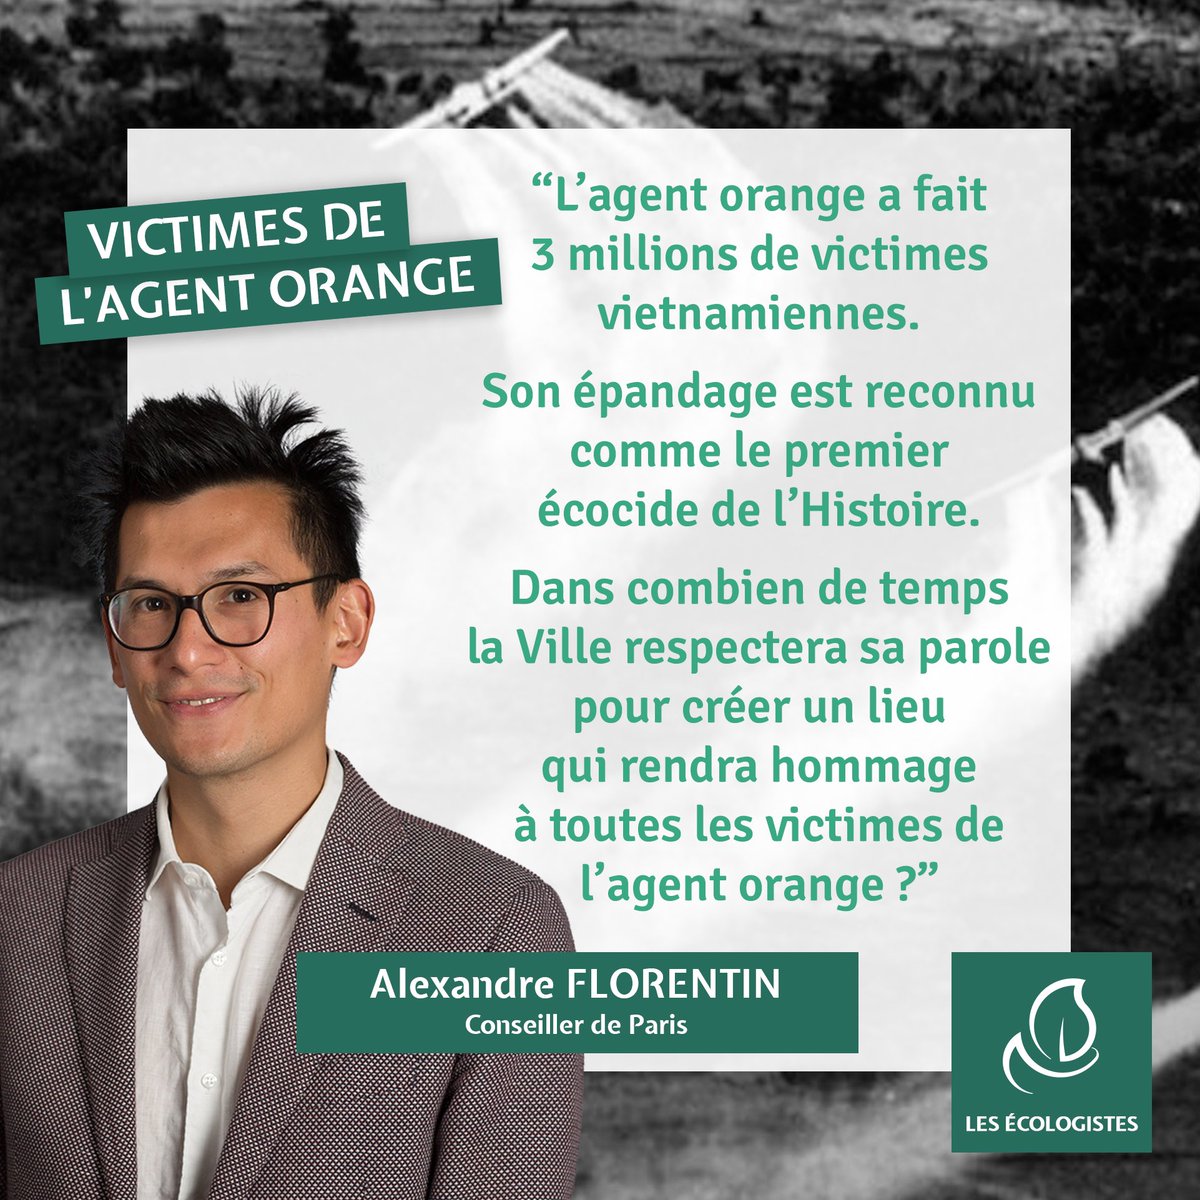 🔴 #ConseildeParis : Agent orange, à l’initiative des Écologistes, le Conseil de Paris adopte à l’unanimité la proposition de créer un lieu en hommage à toutes les victimes de l’agent orange. Bravo @AlexMFlorentin ! 👏